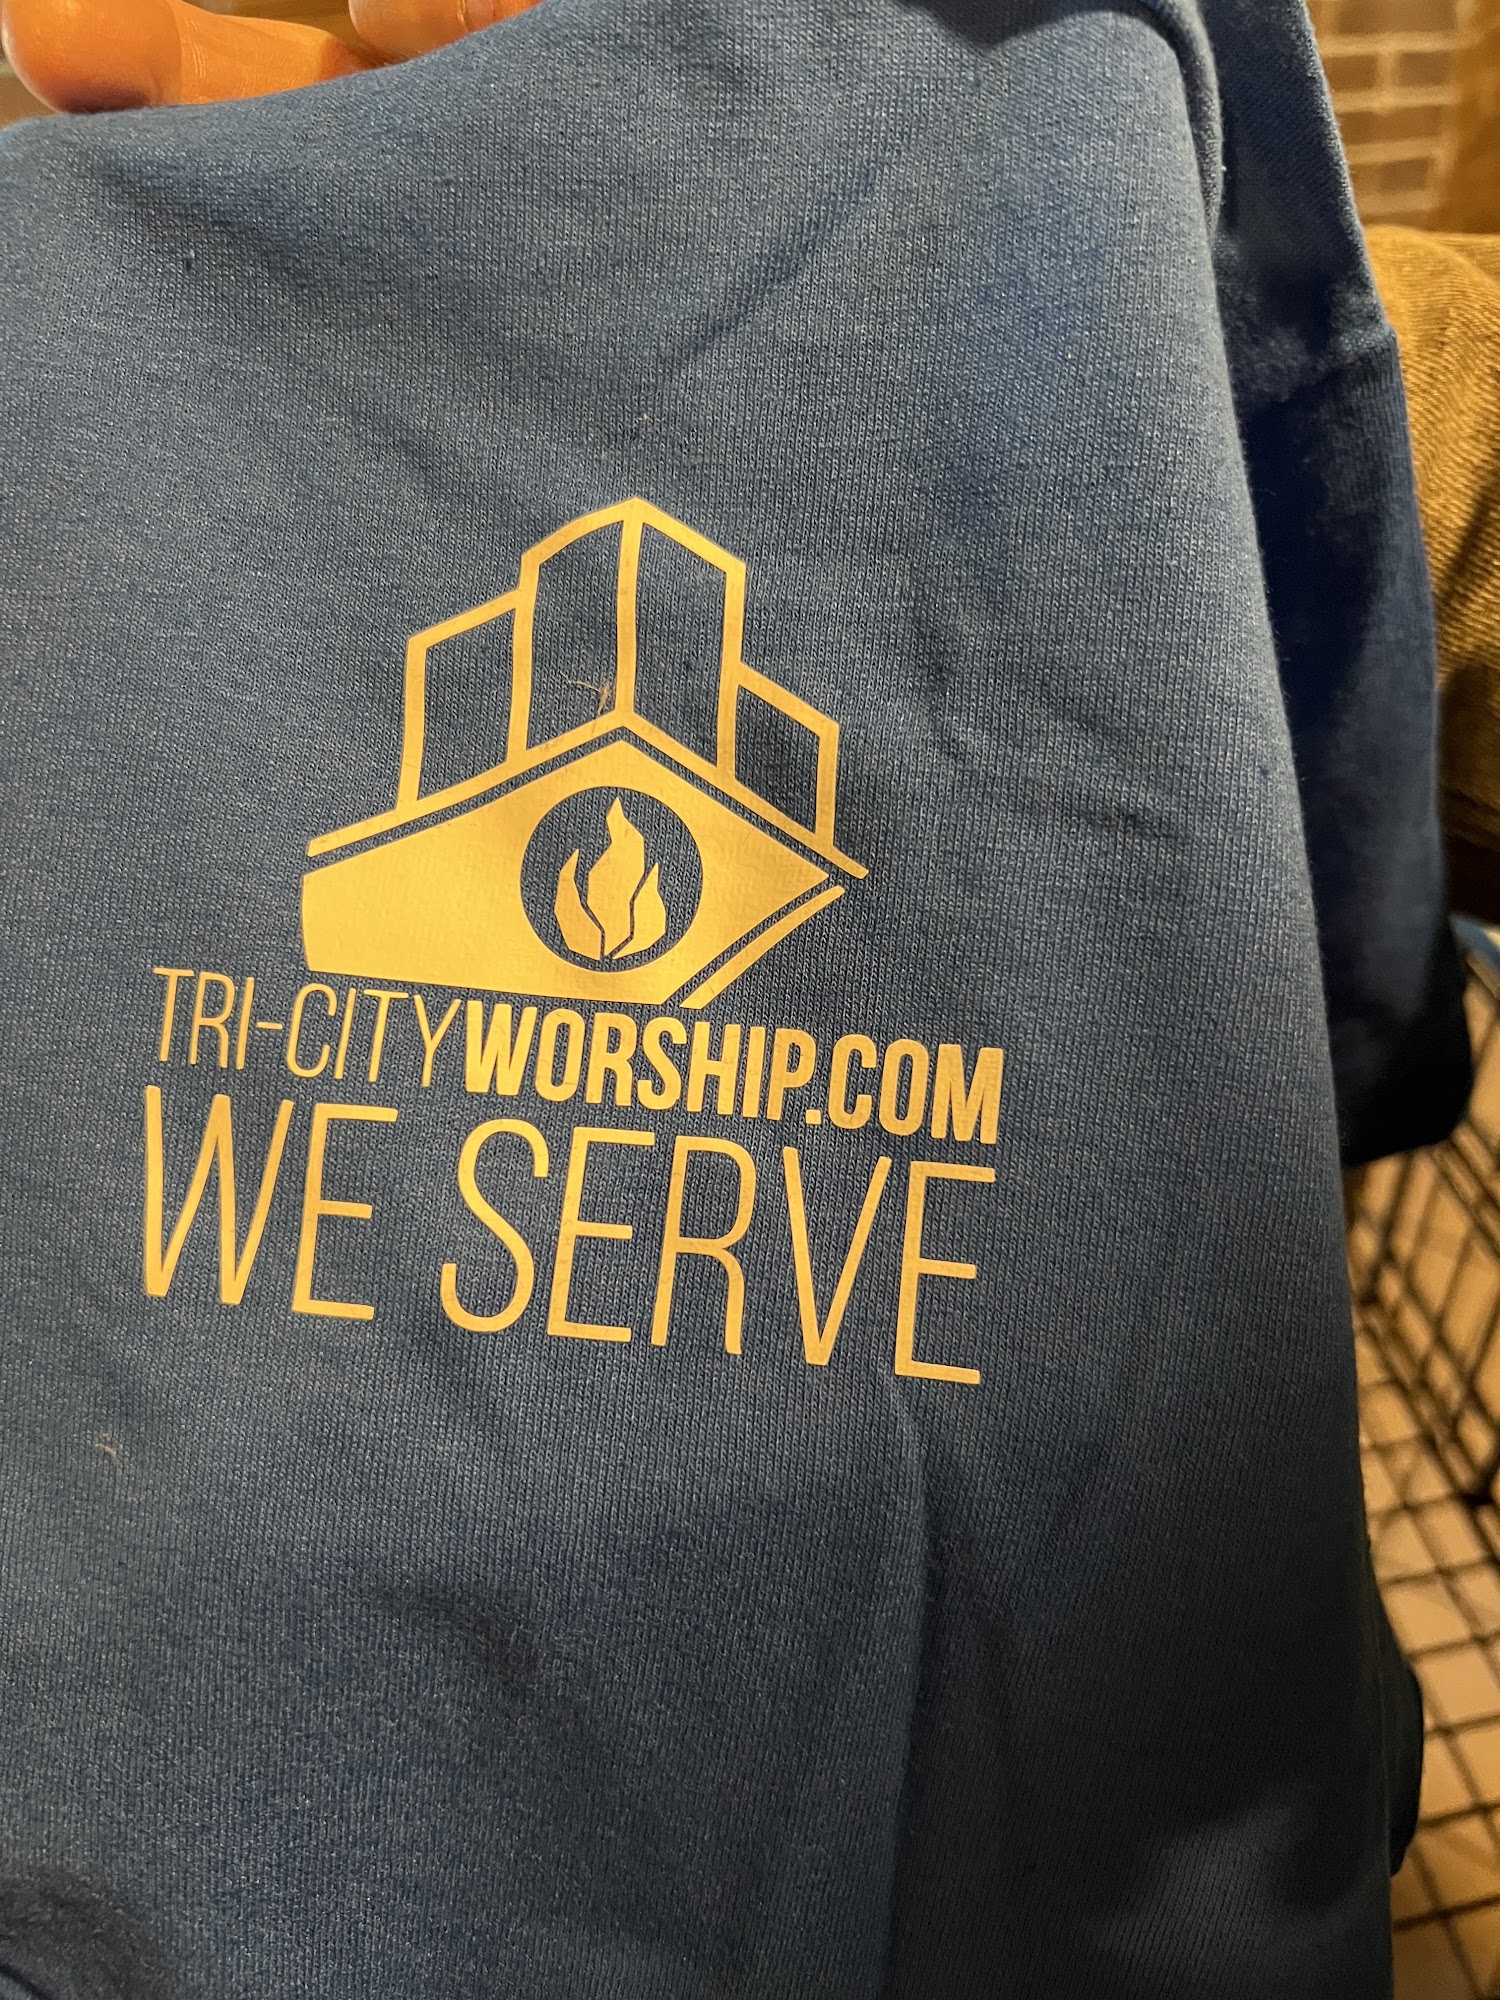 Tri-City Worship Church